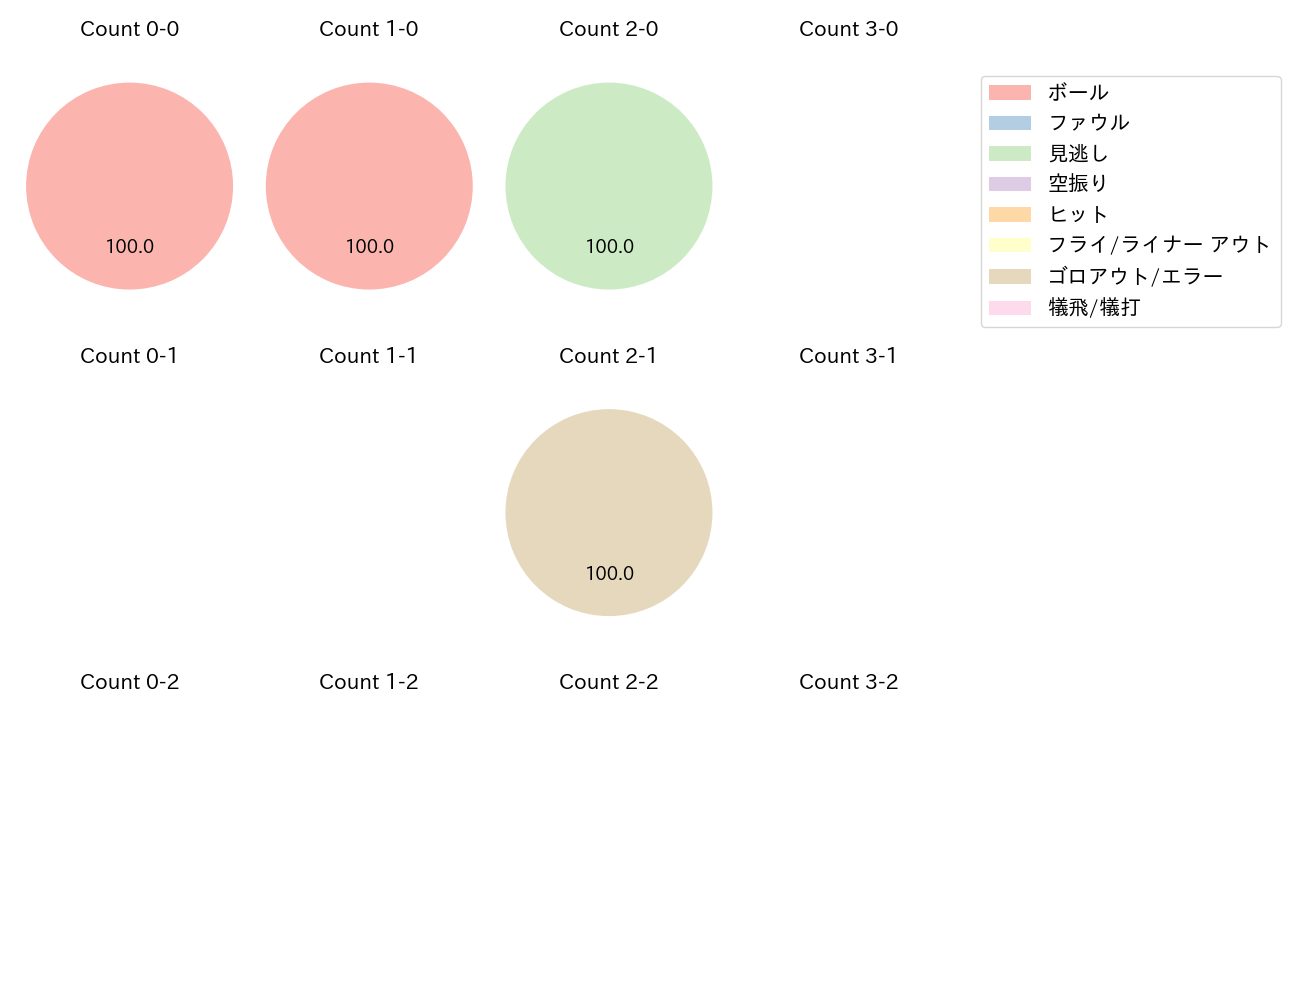 石川 雅規の球数分布(2022年オープン戦)